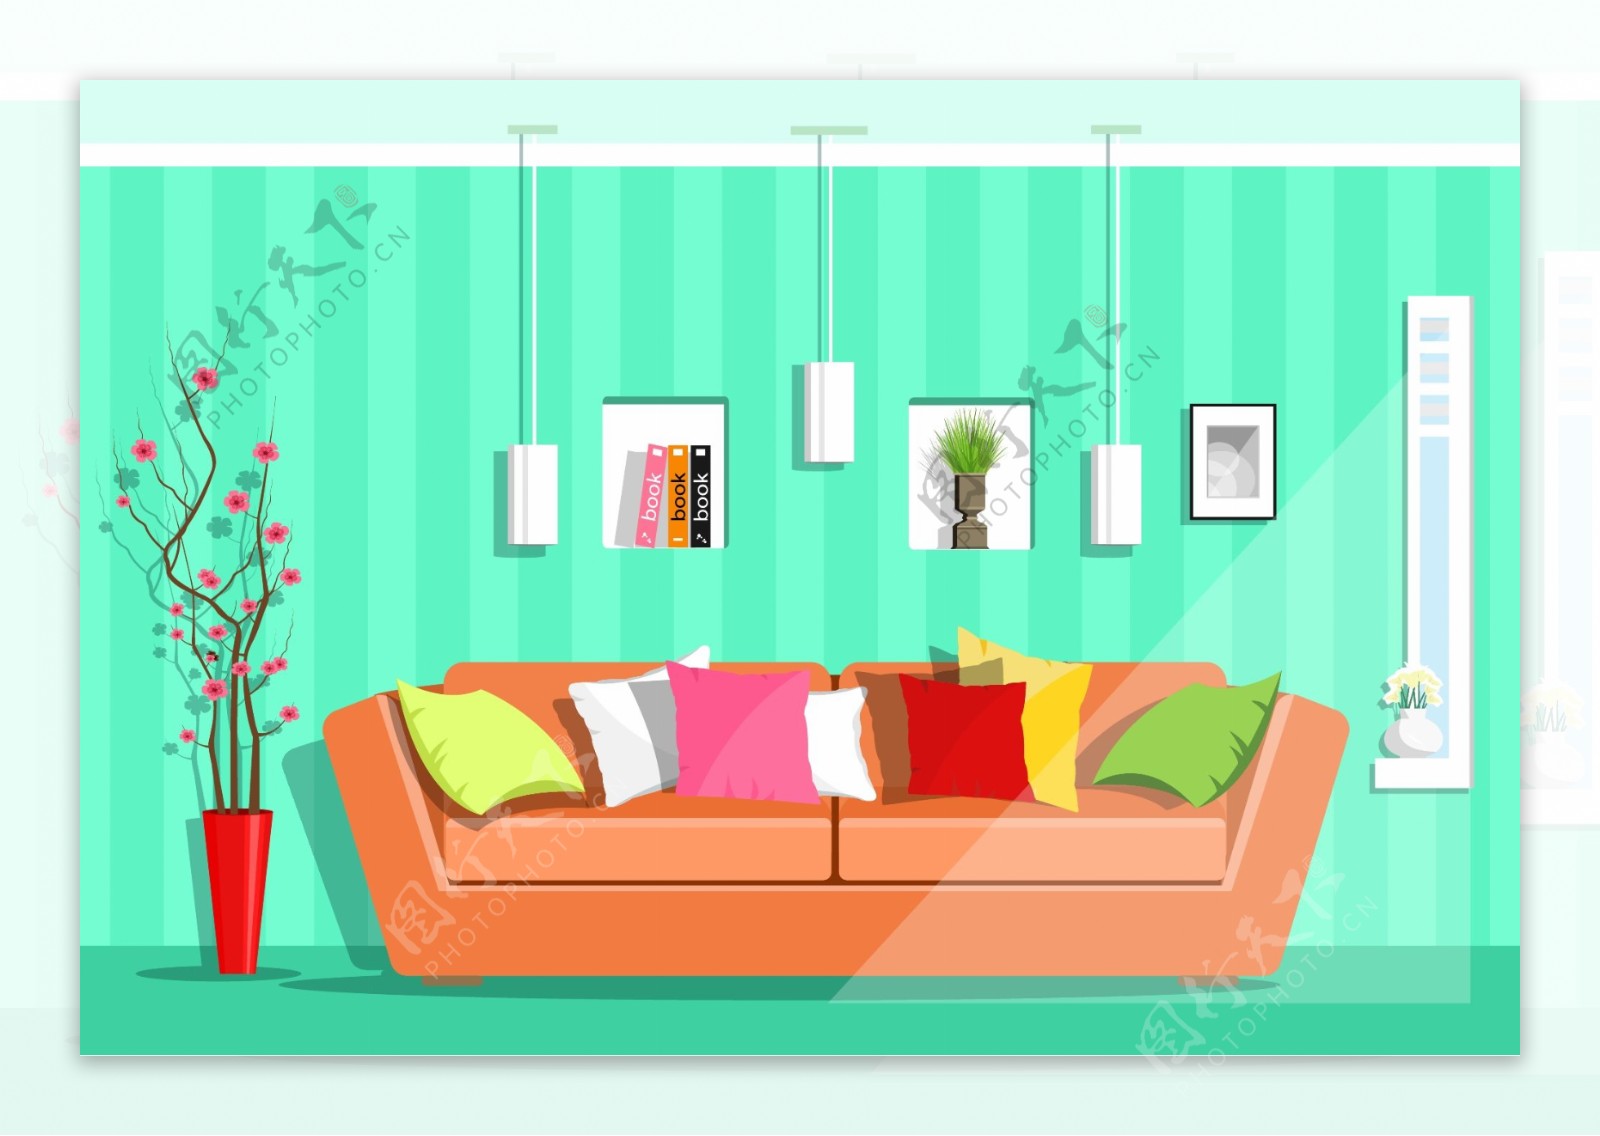 沙发家庭室内房间装饰设计卡通矢量素材